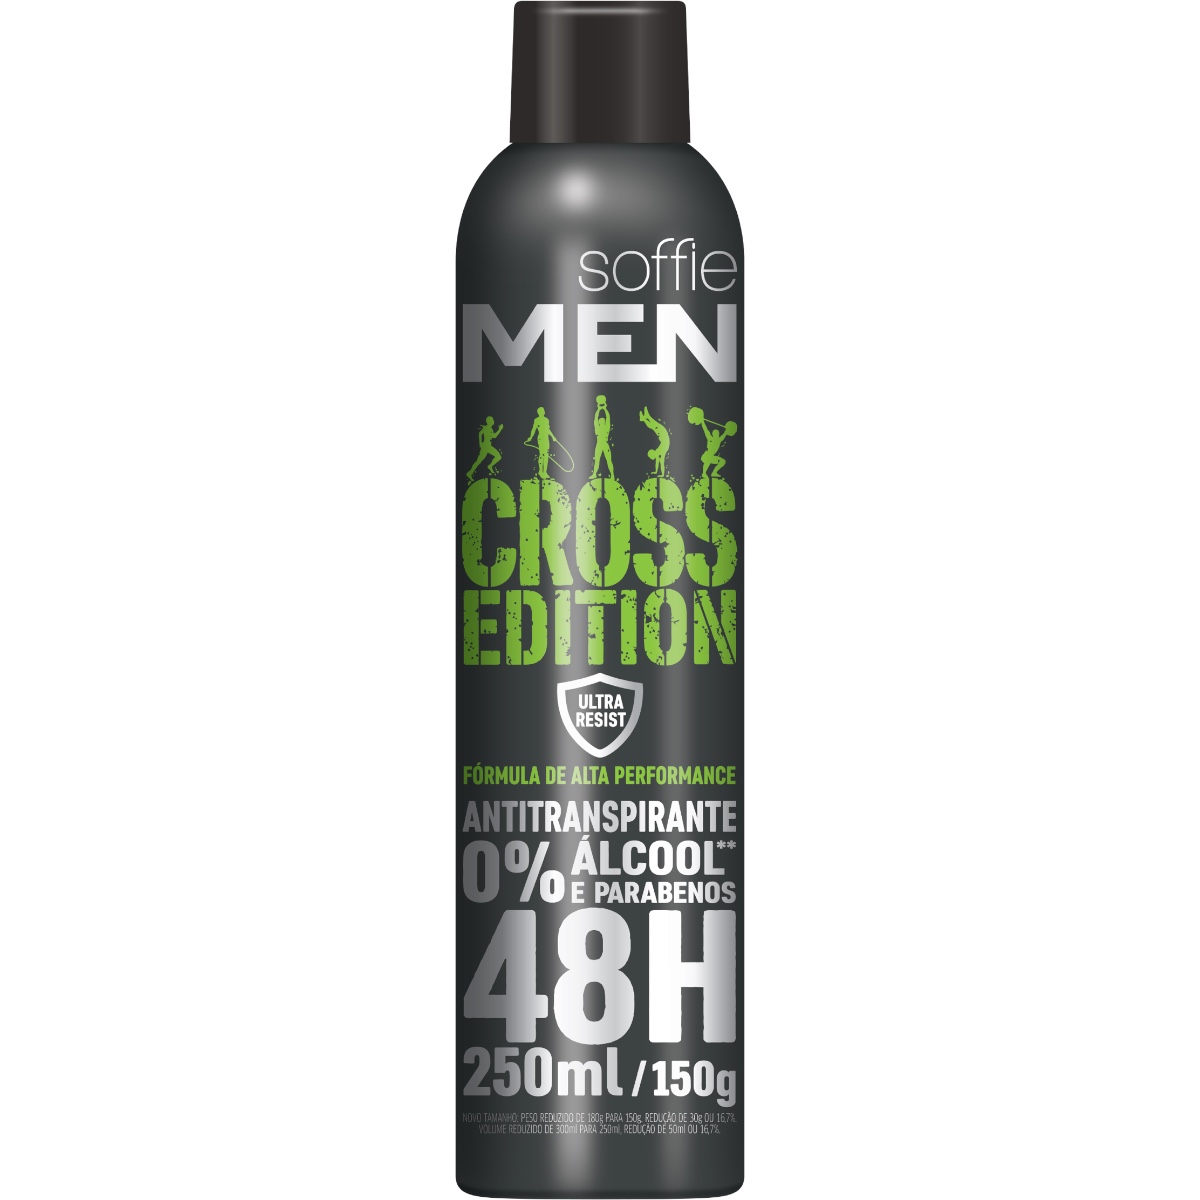 Desodorante Antitranspirante Soffie Men Cross Edition Aerosol Soffie Encontre Os Melhores